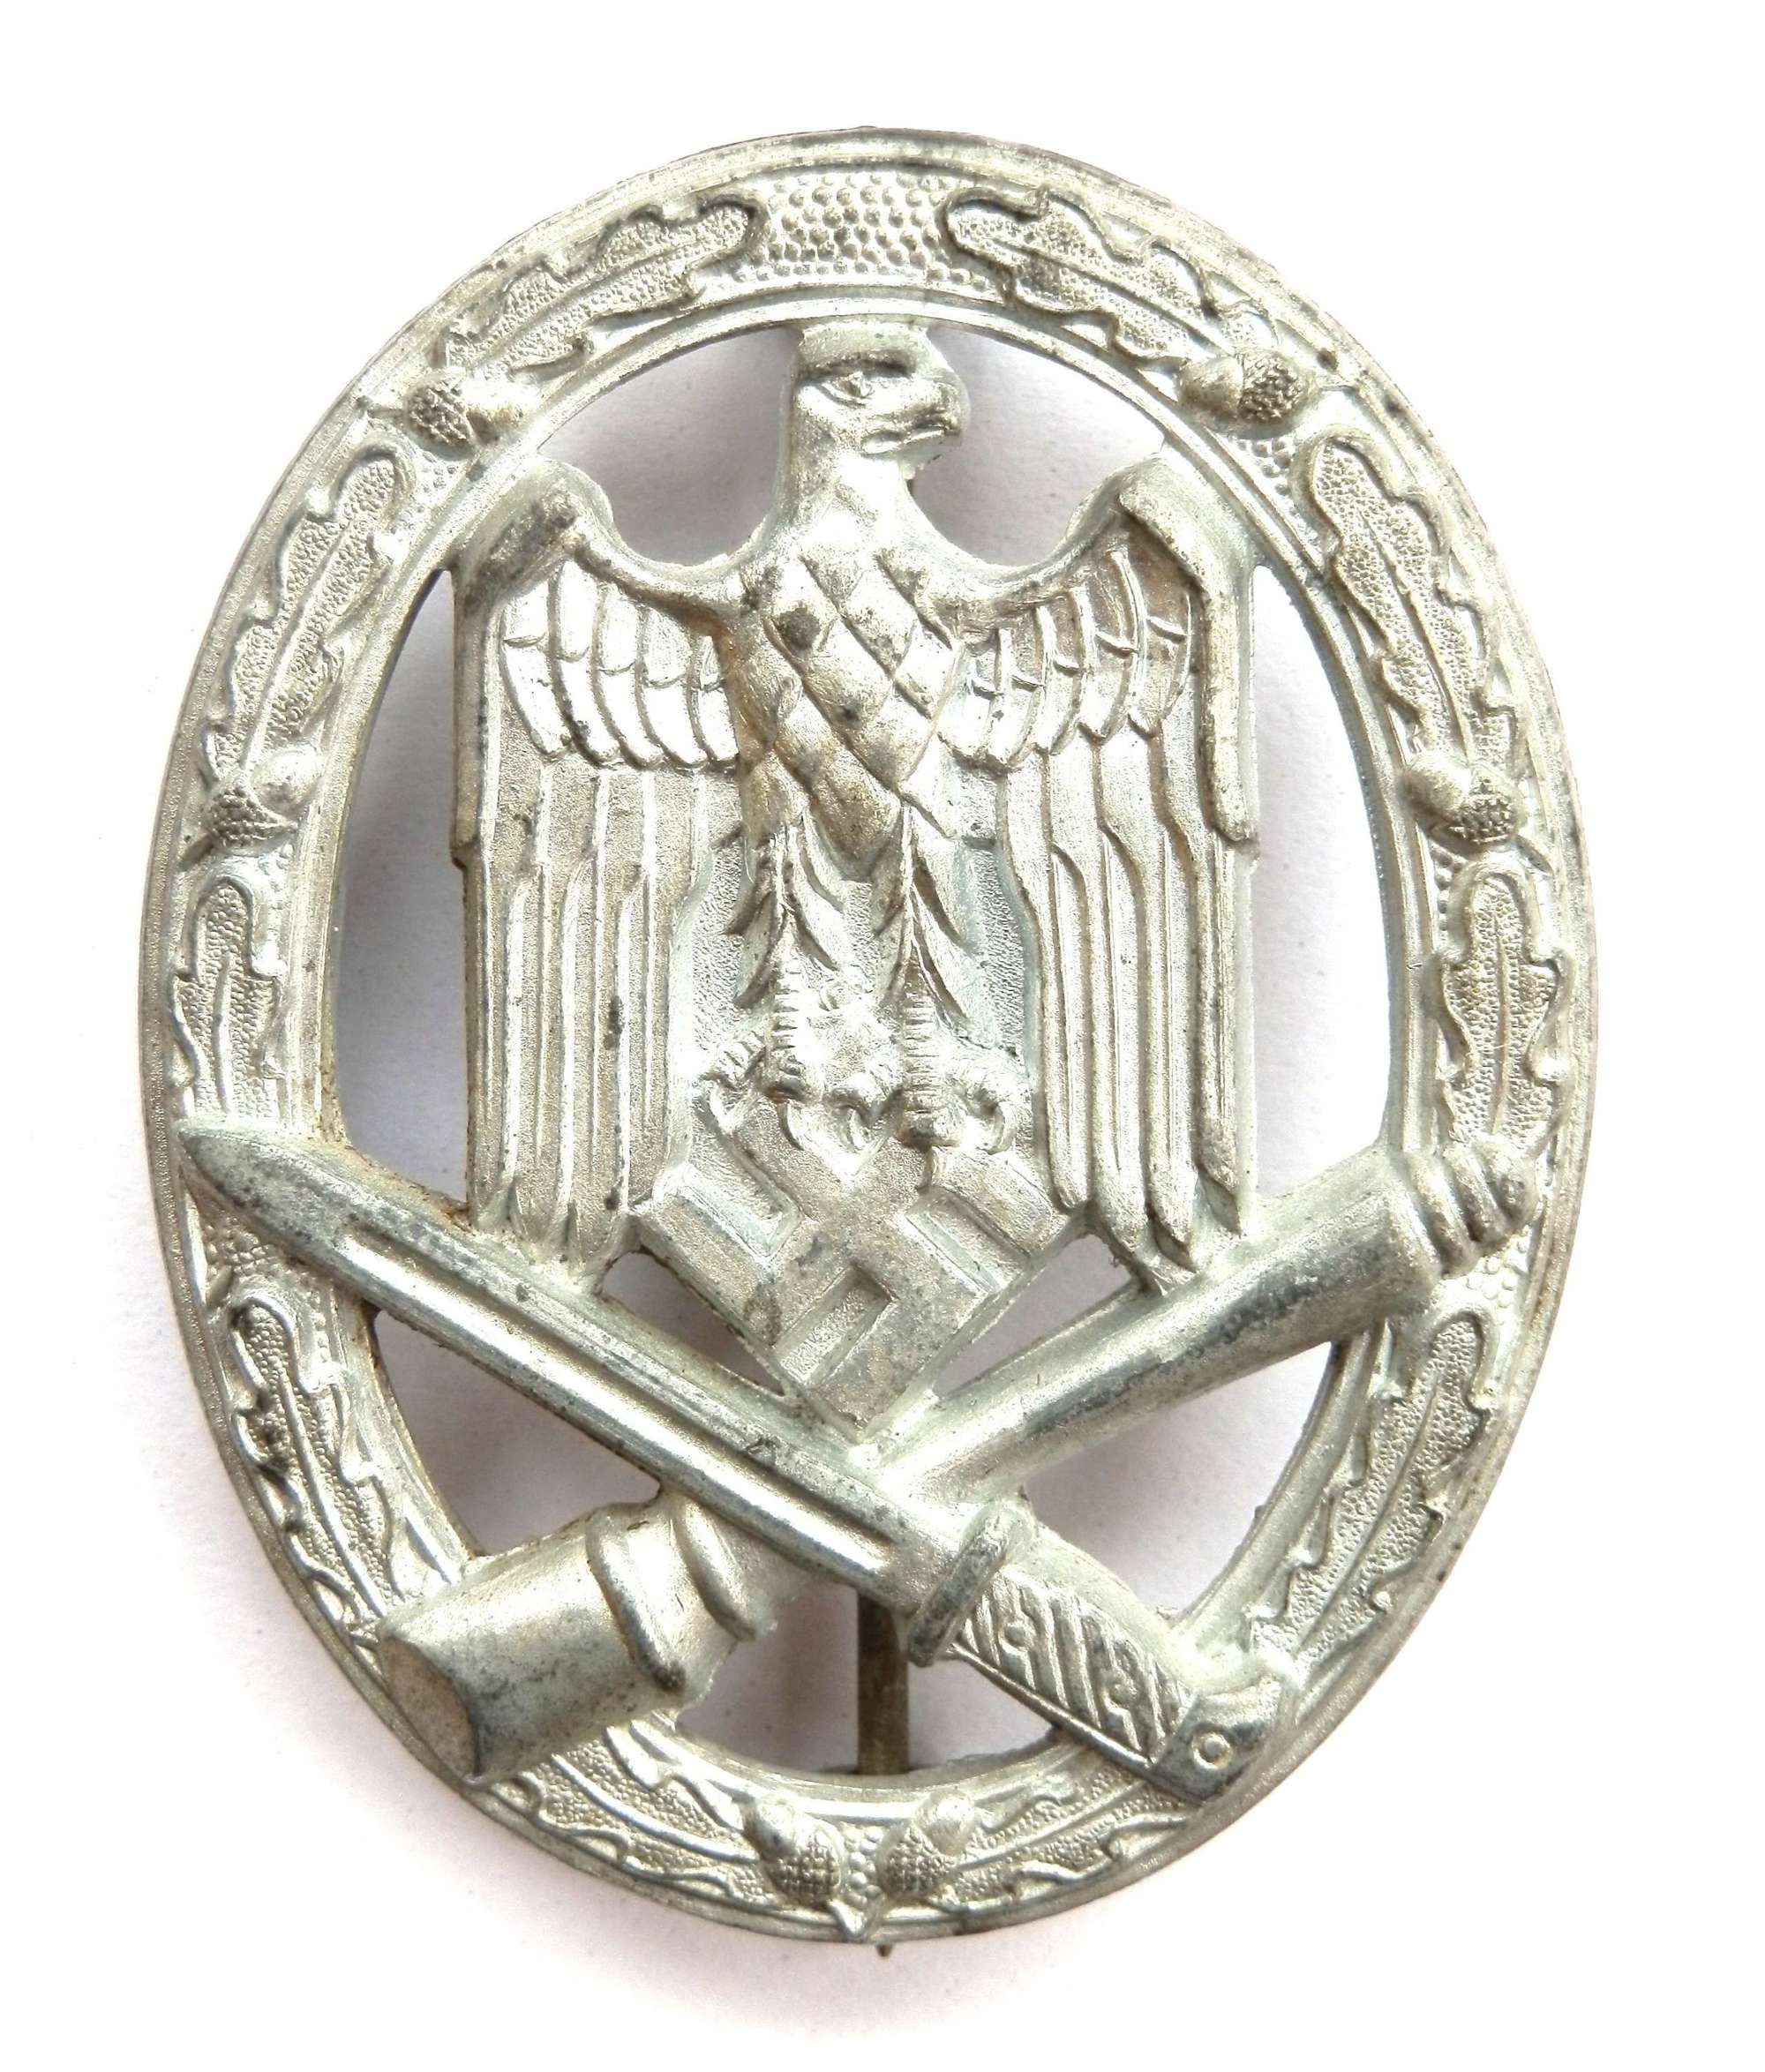 German General Assault Badge. Maker marked Assmann ‘1’.